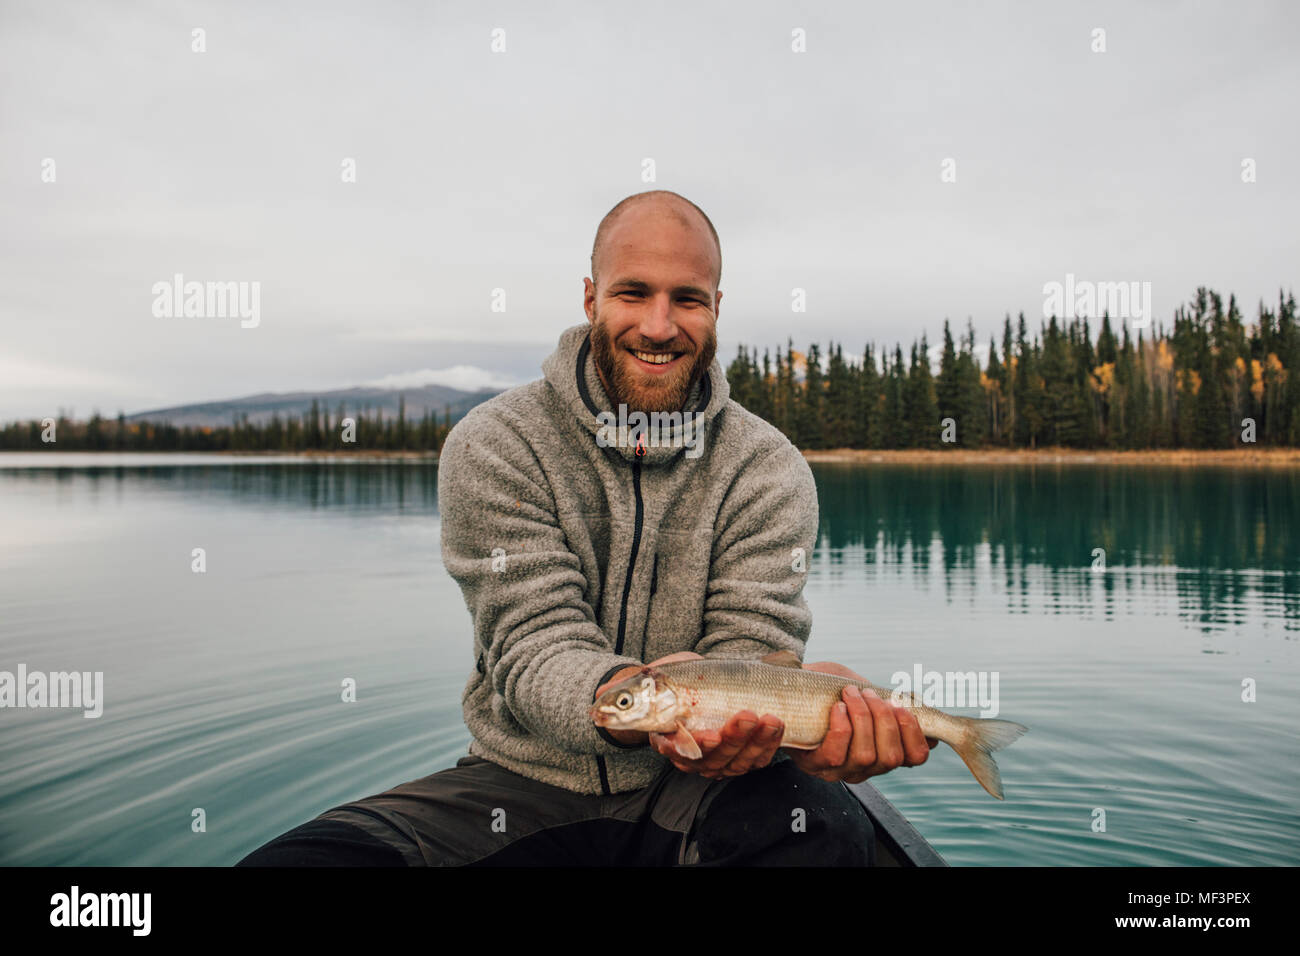 Canadá, Columbia Británica, retrato del hombre sonriente en canoa la celebración de pescar en el lago Boya Foto de stock